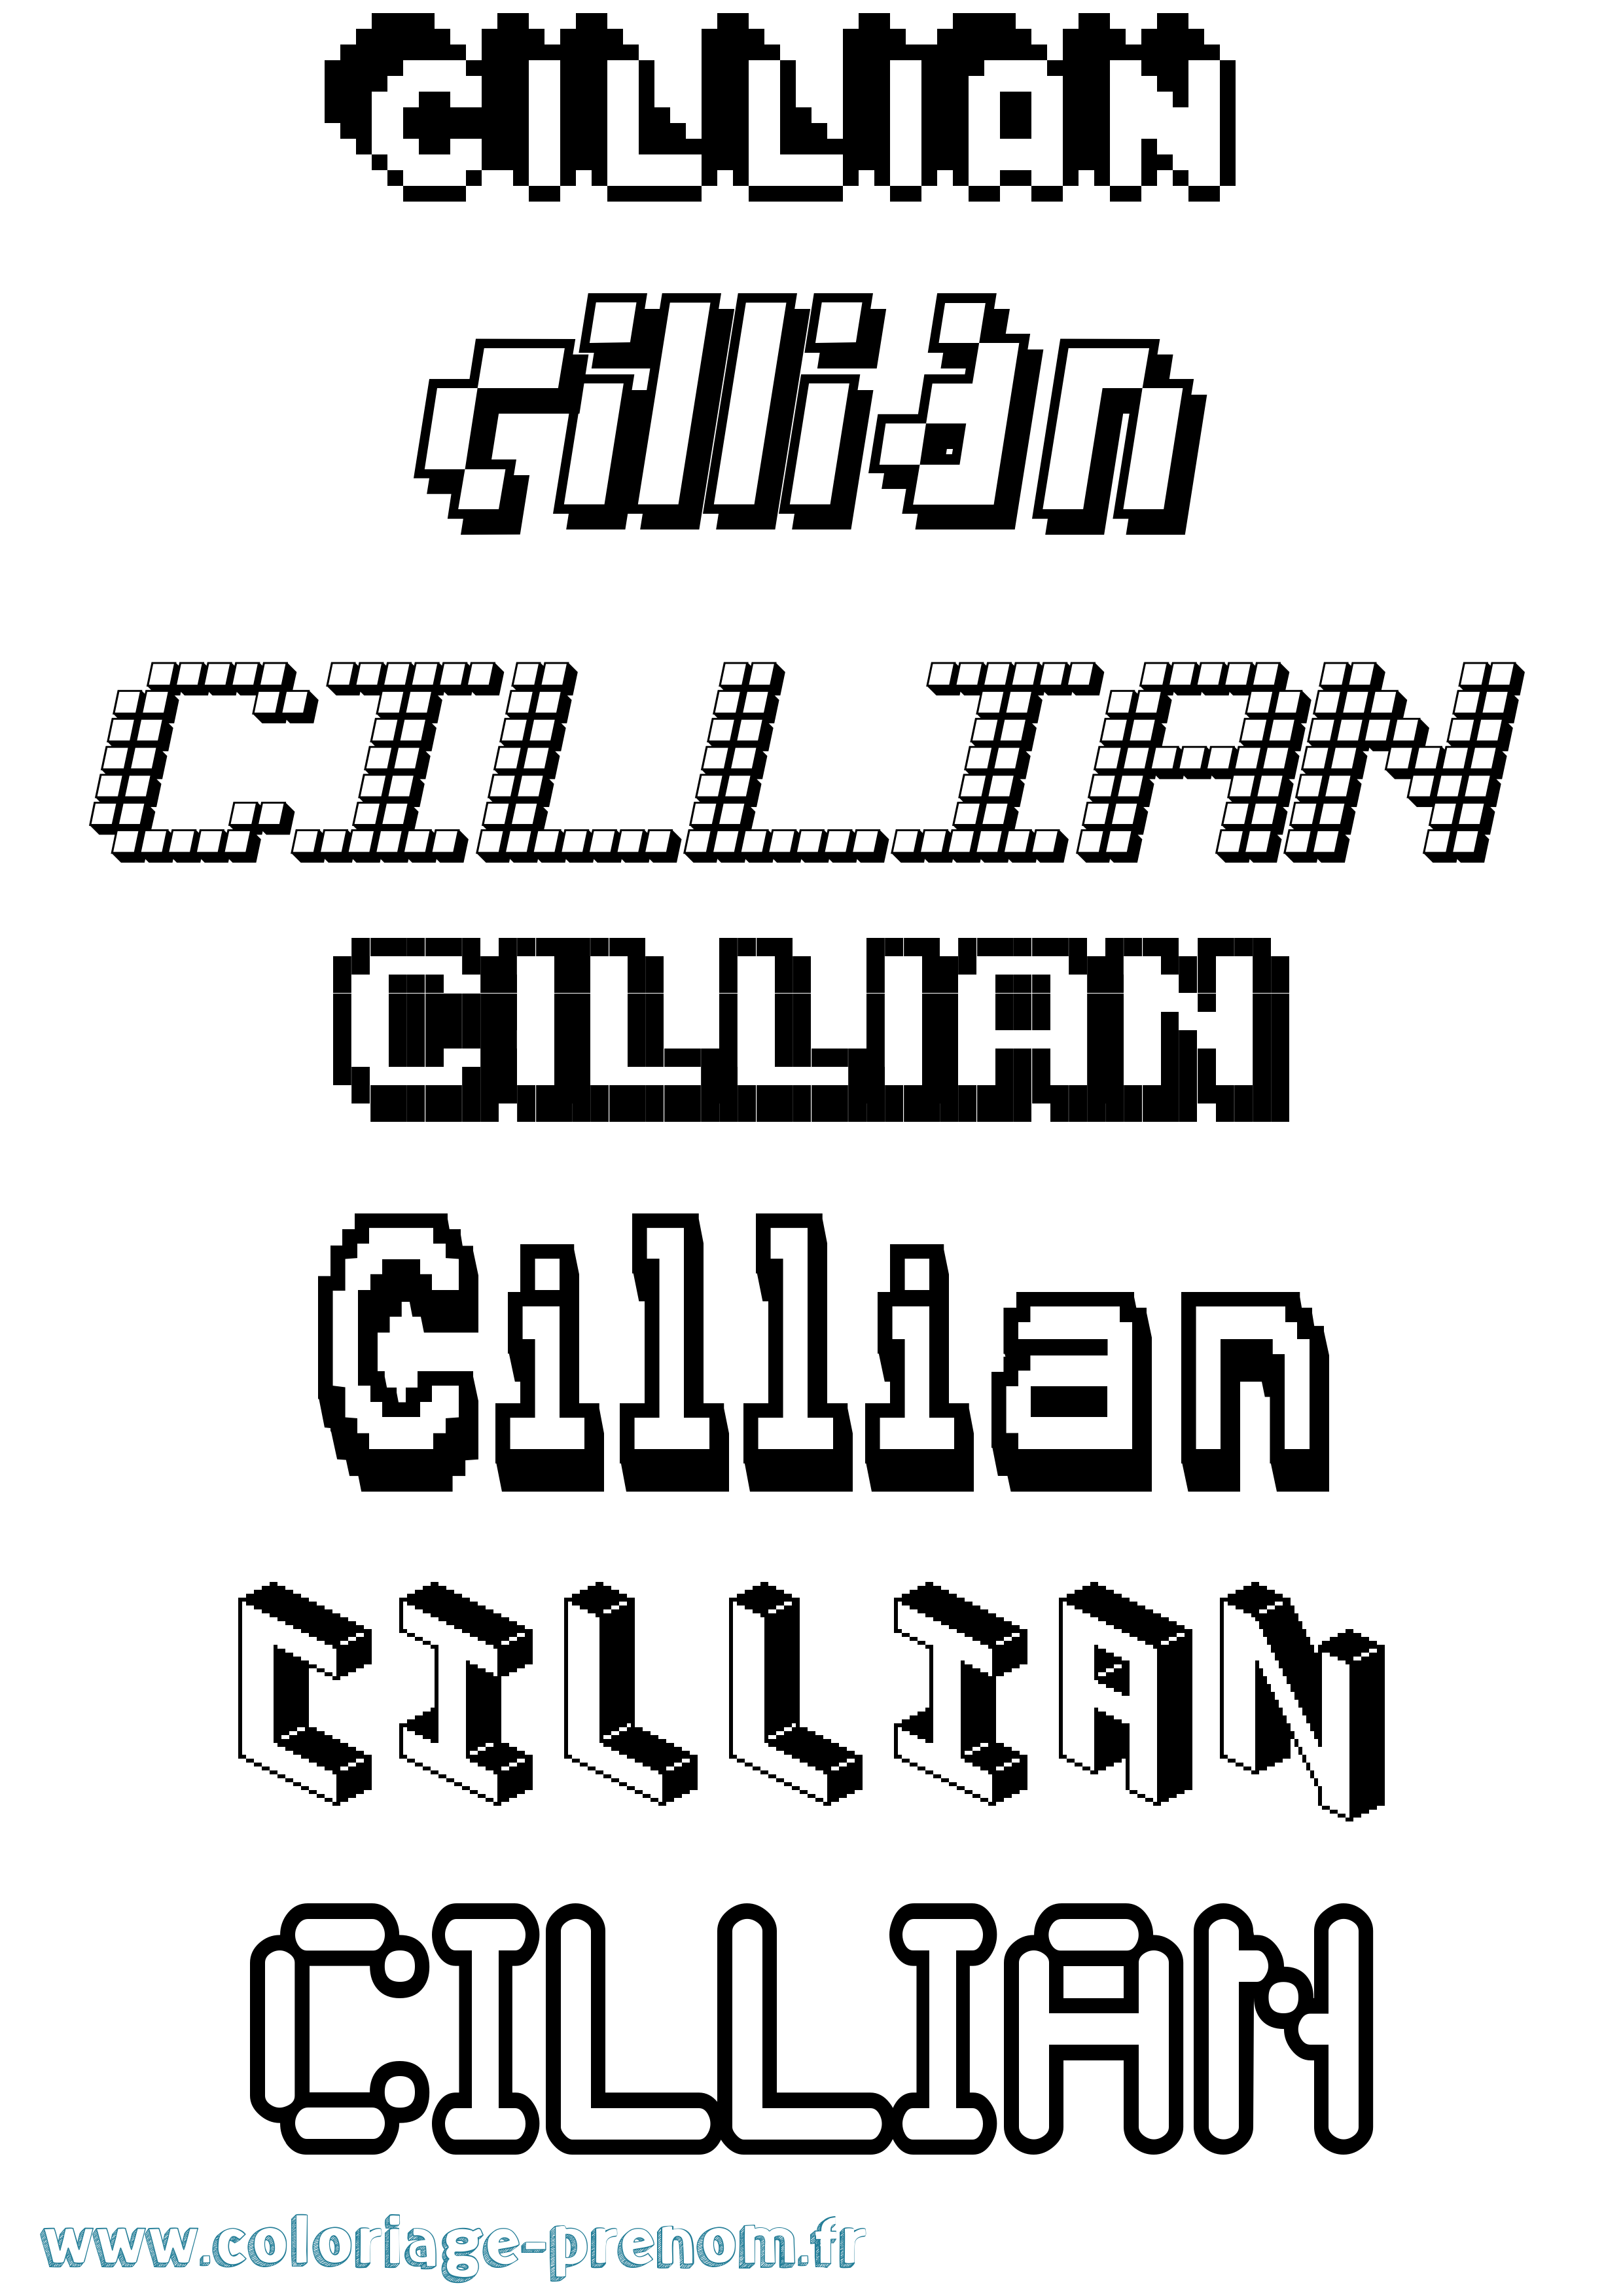 Coloriage prénom Cillian Pixel